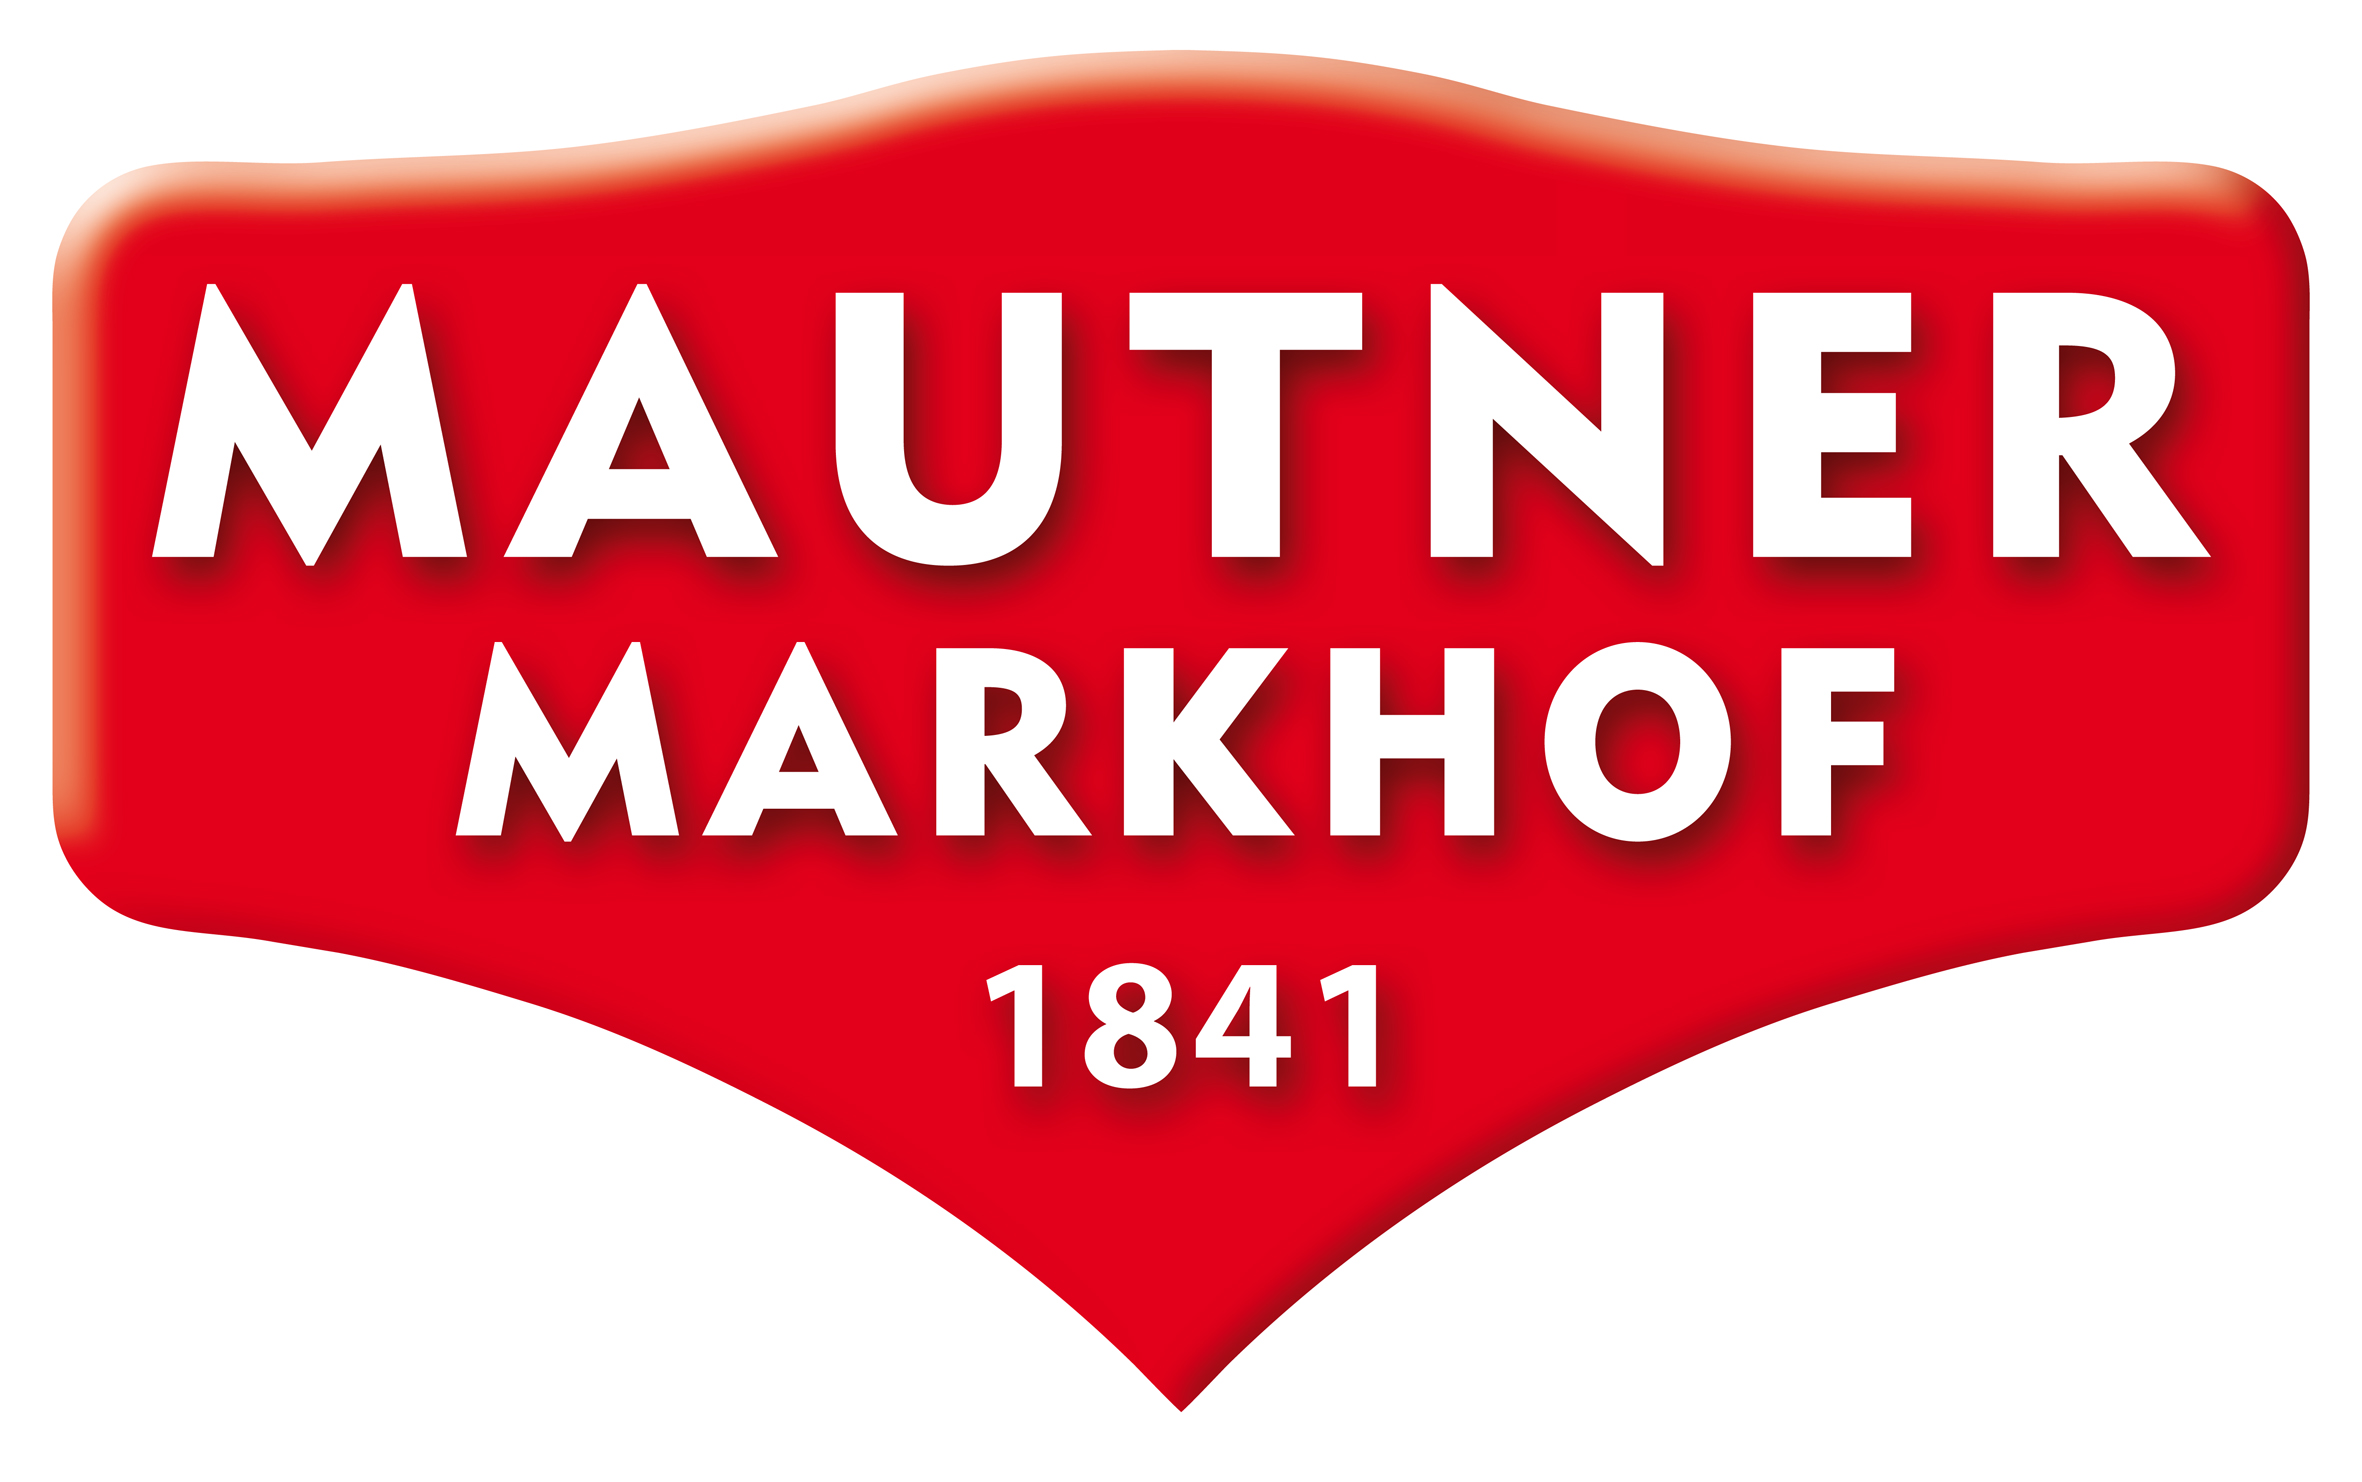 Mautner Markhof © Mautner Markhof